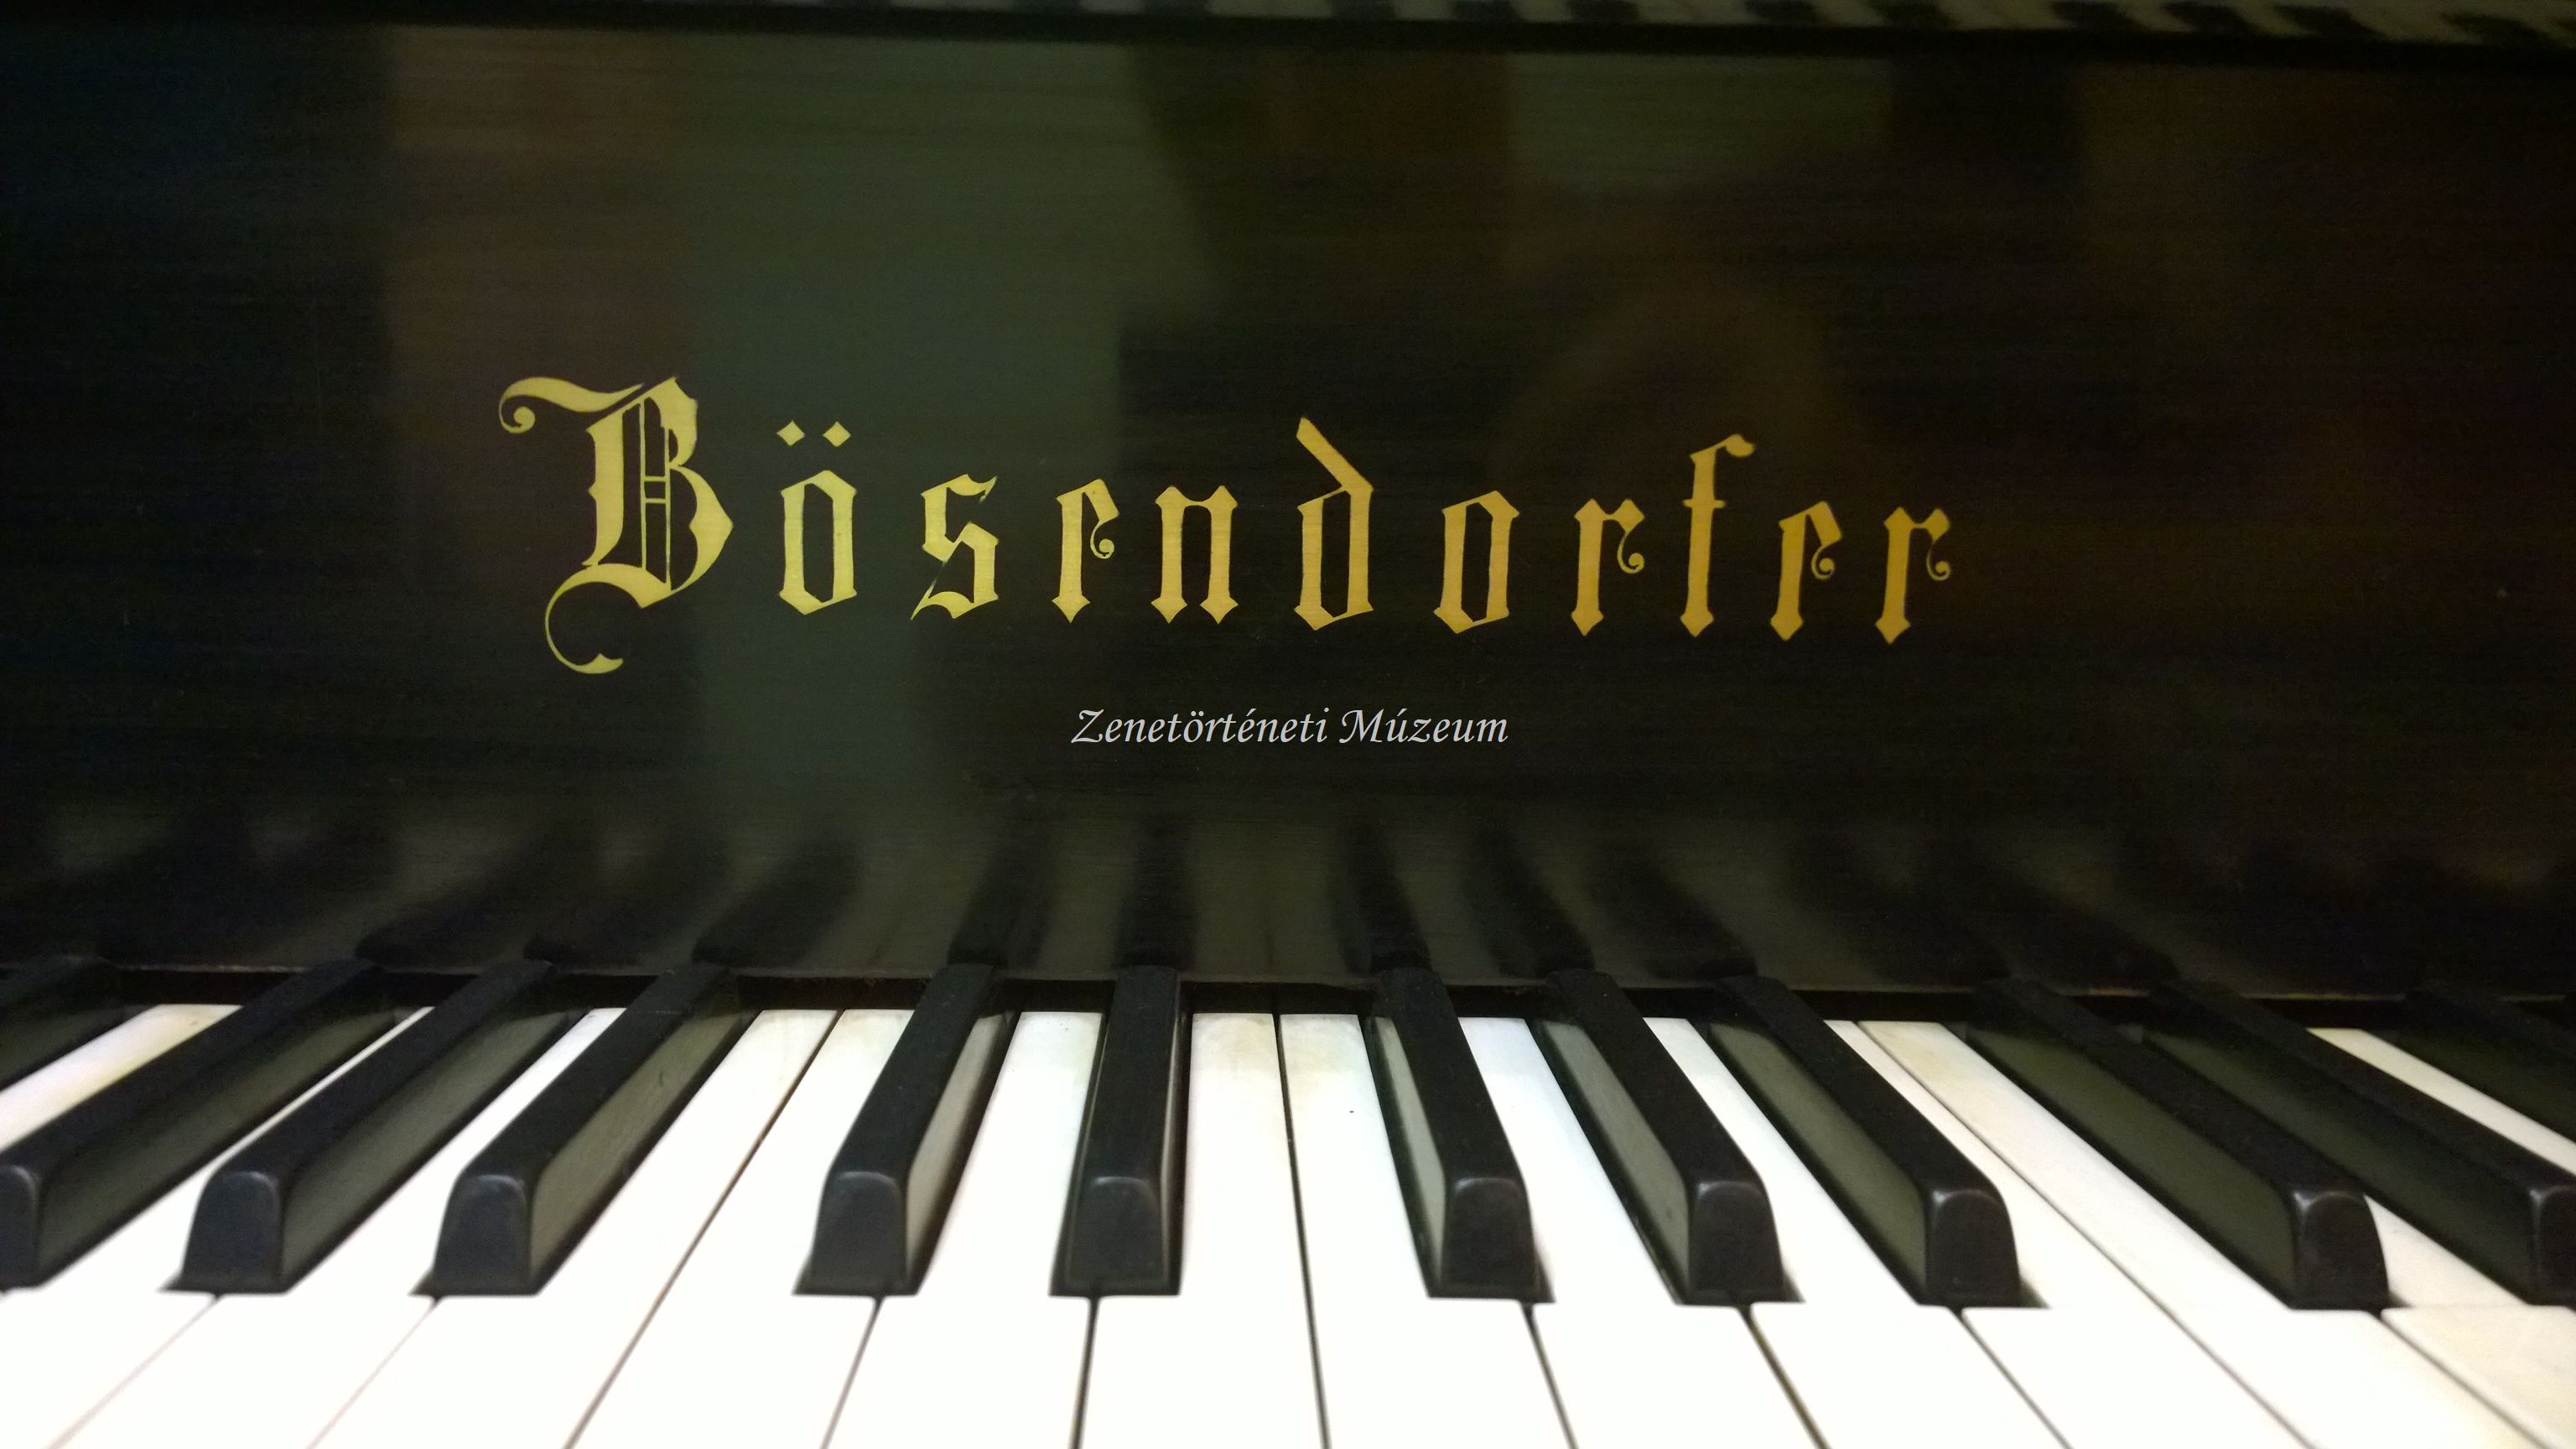 Zongora (Zenetörténeti Múzeum CC BY-NC-SA)